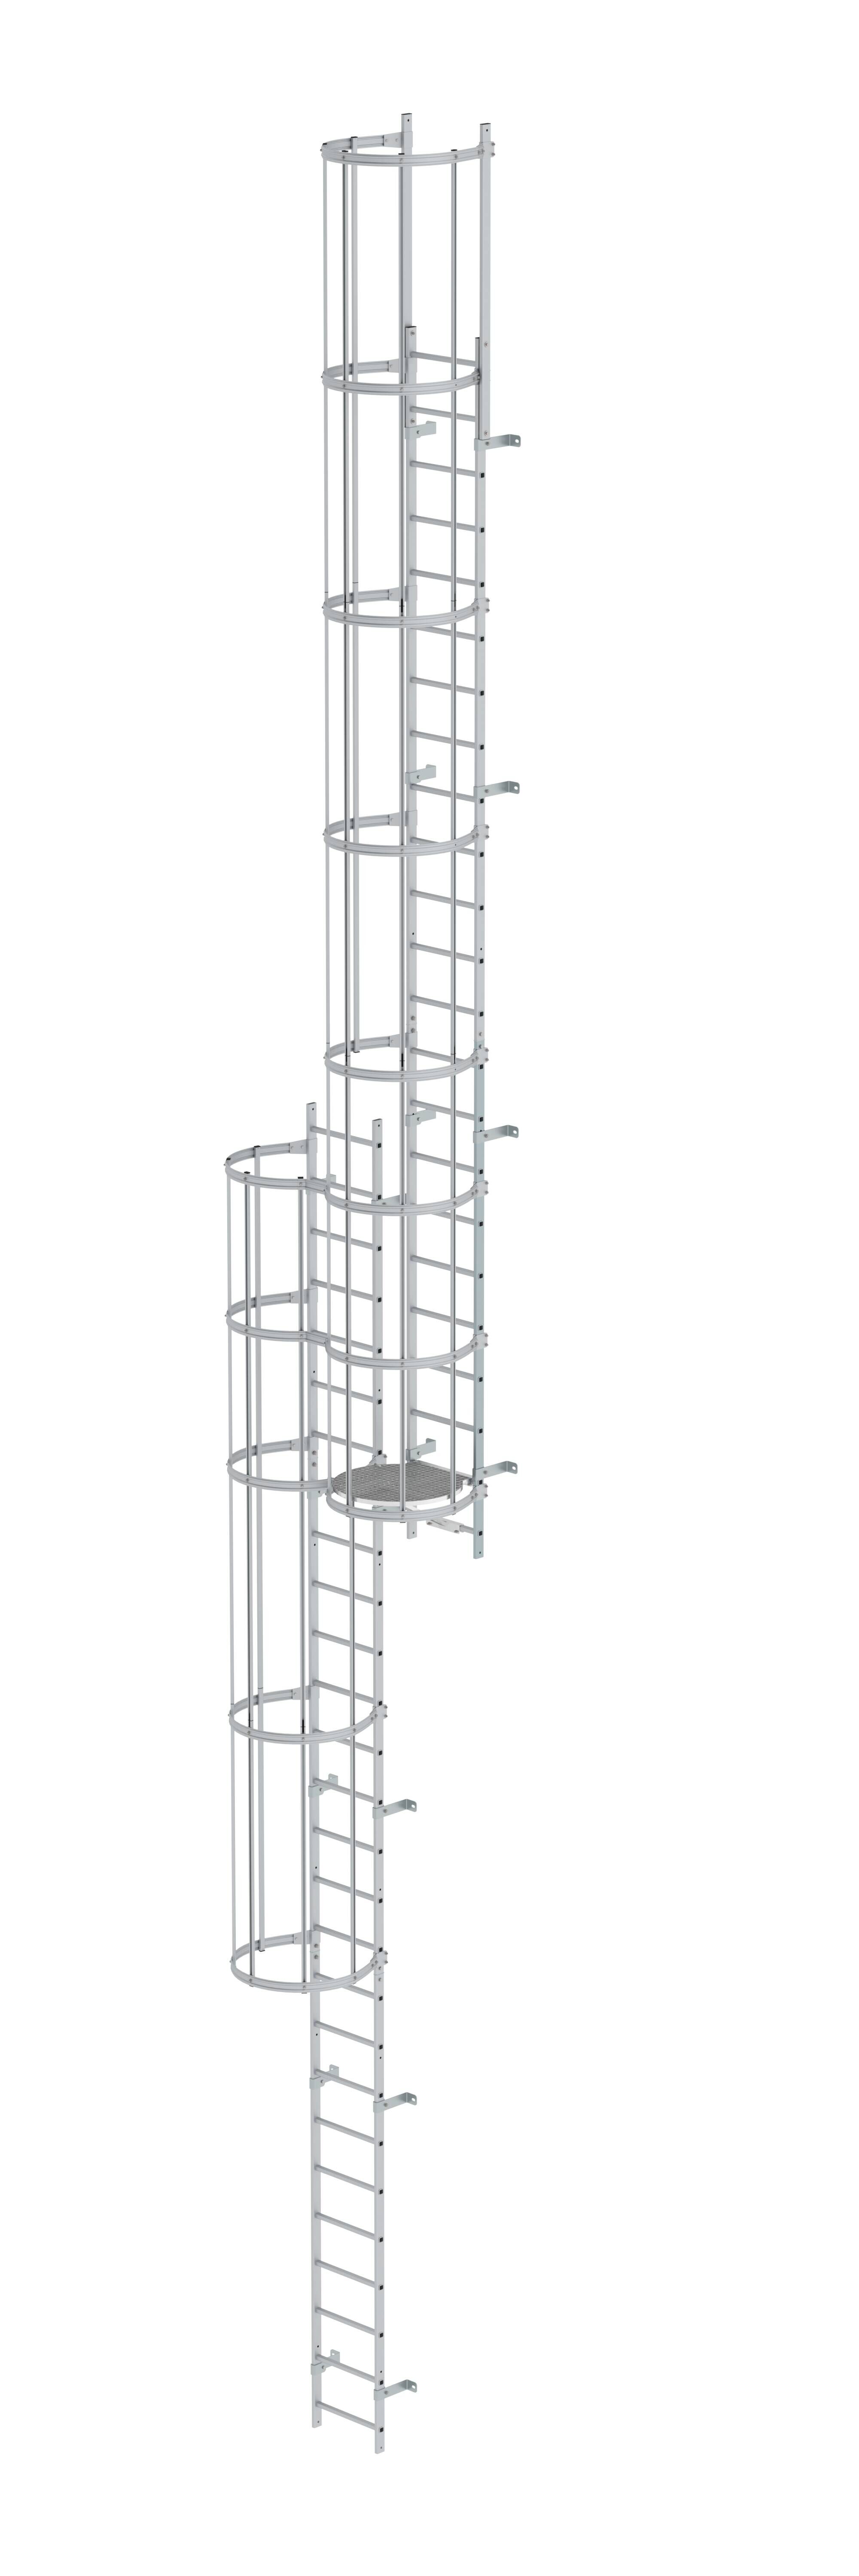 Mehrzügige Steigleiter mit Rückenschutz (Notleiter) Aluminium eloxiert 12,96m